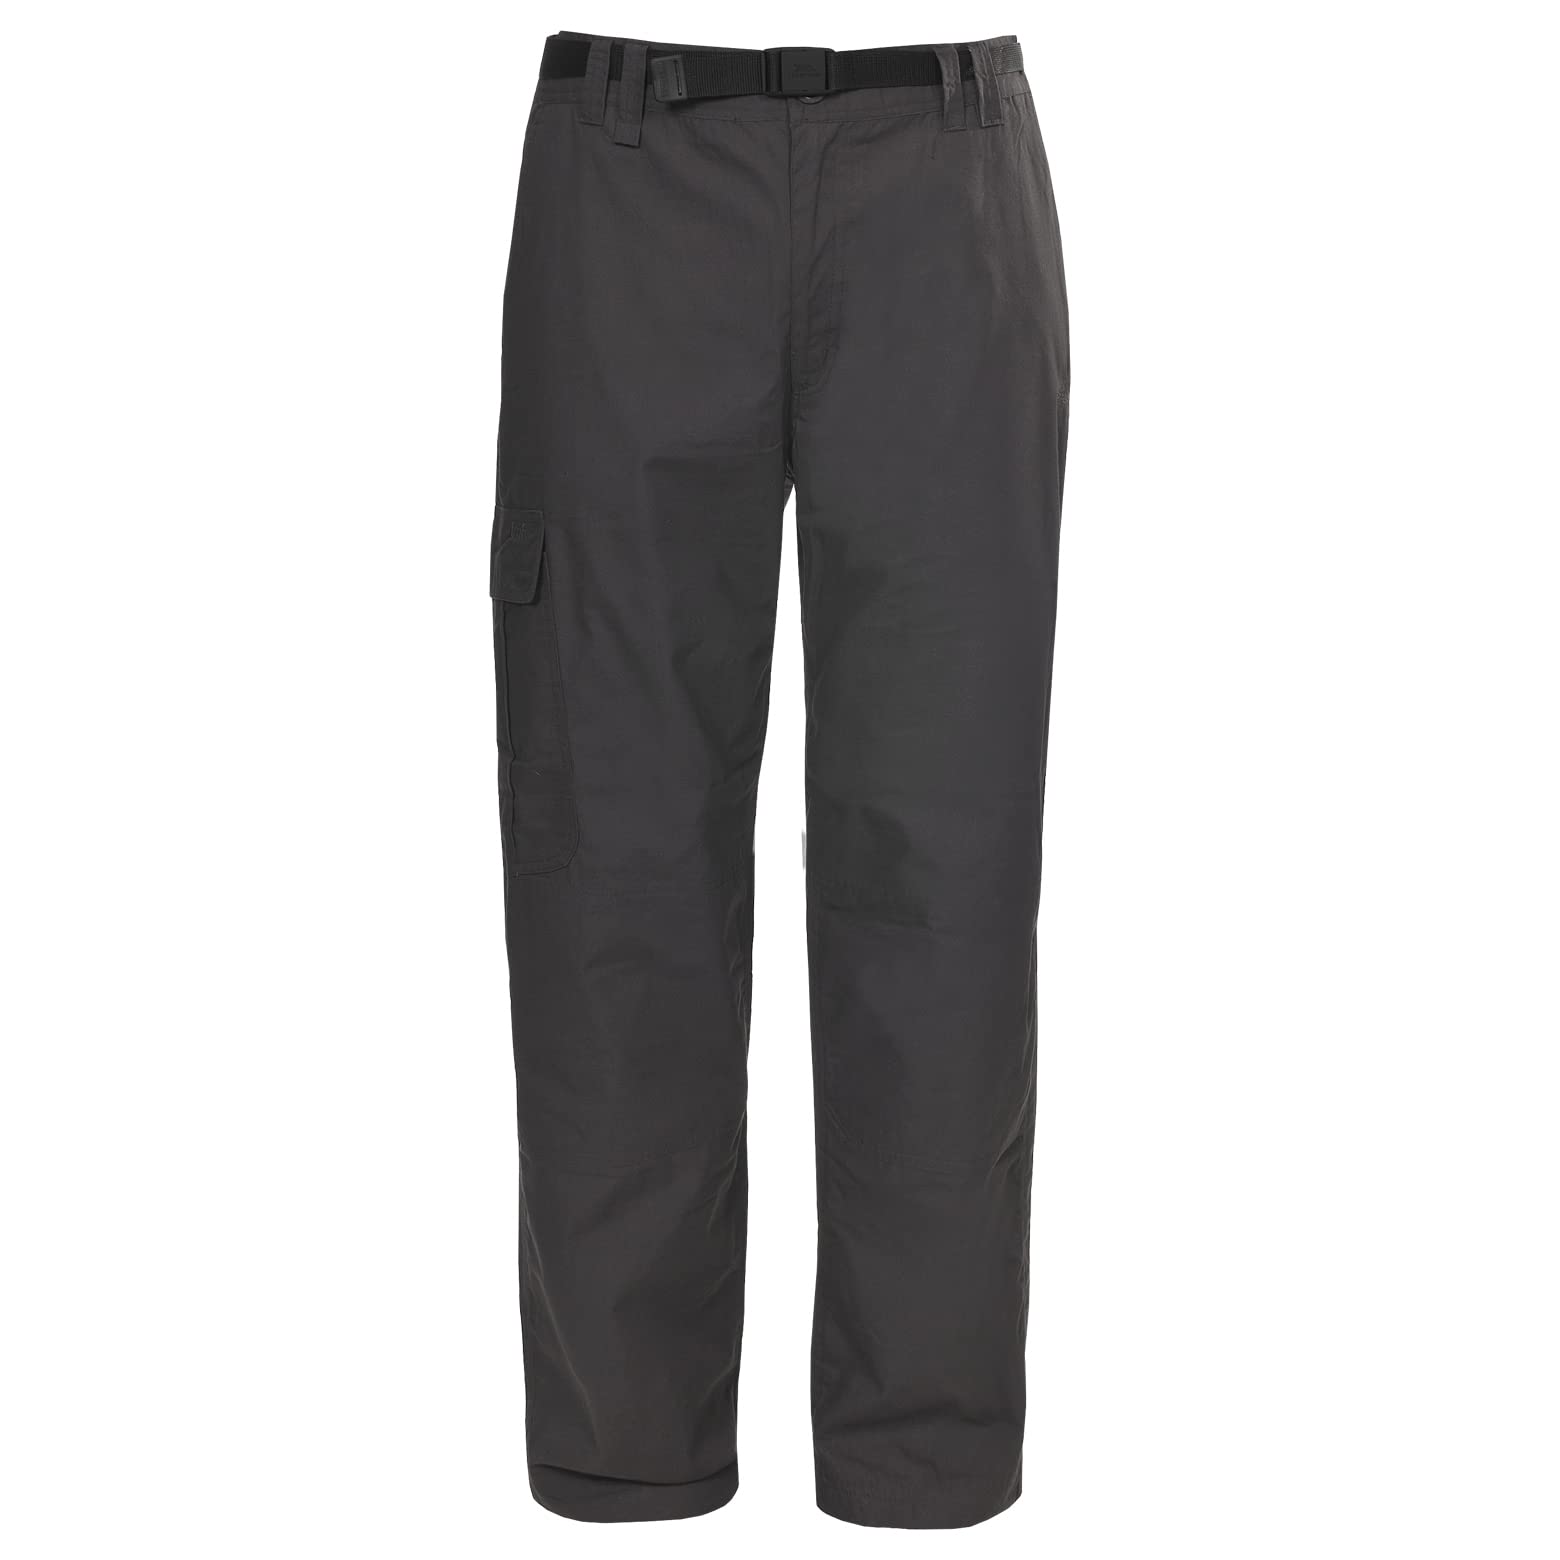 Trespass Clifton Thermal, Khaki, XXS, Wasserabweisende Schnelltrocknende Hose mit UV-Schutz, 8 Taschen für Herren, XX-Small / 2XS / 2X-Small, Grün